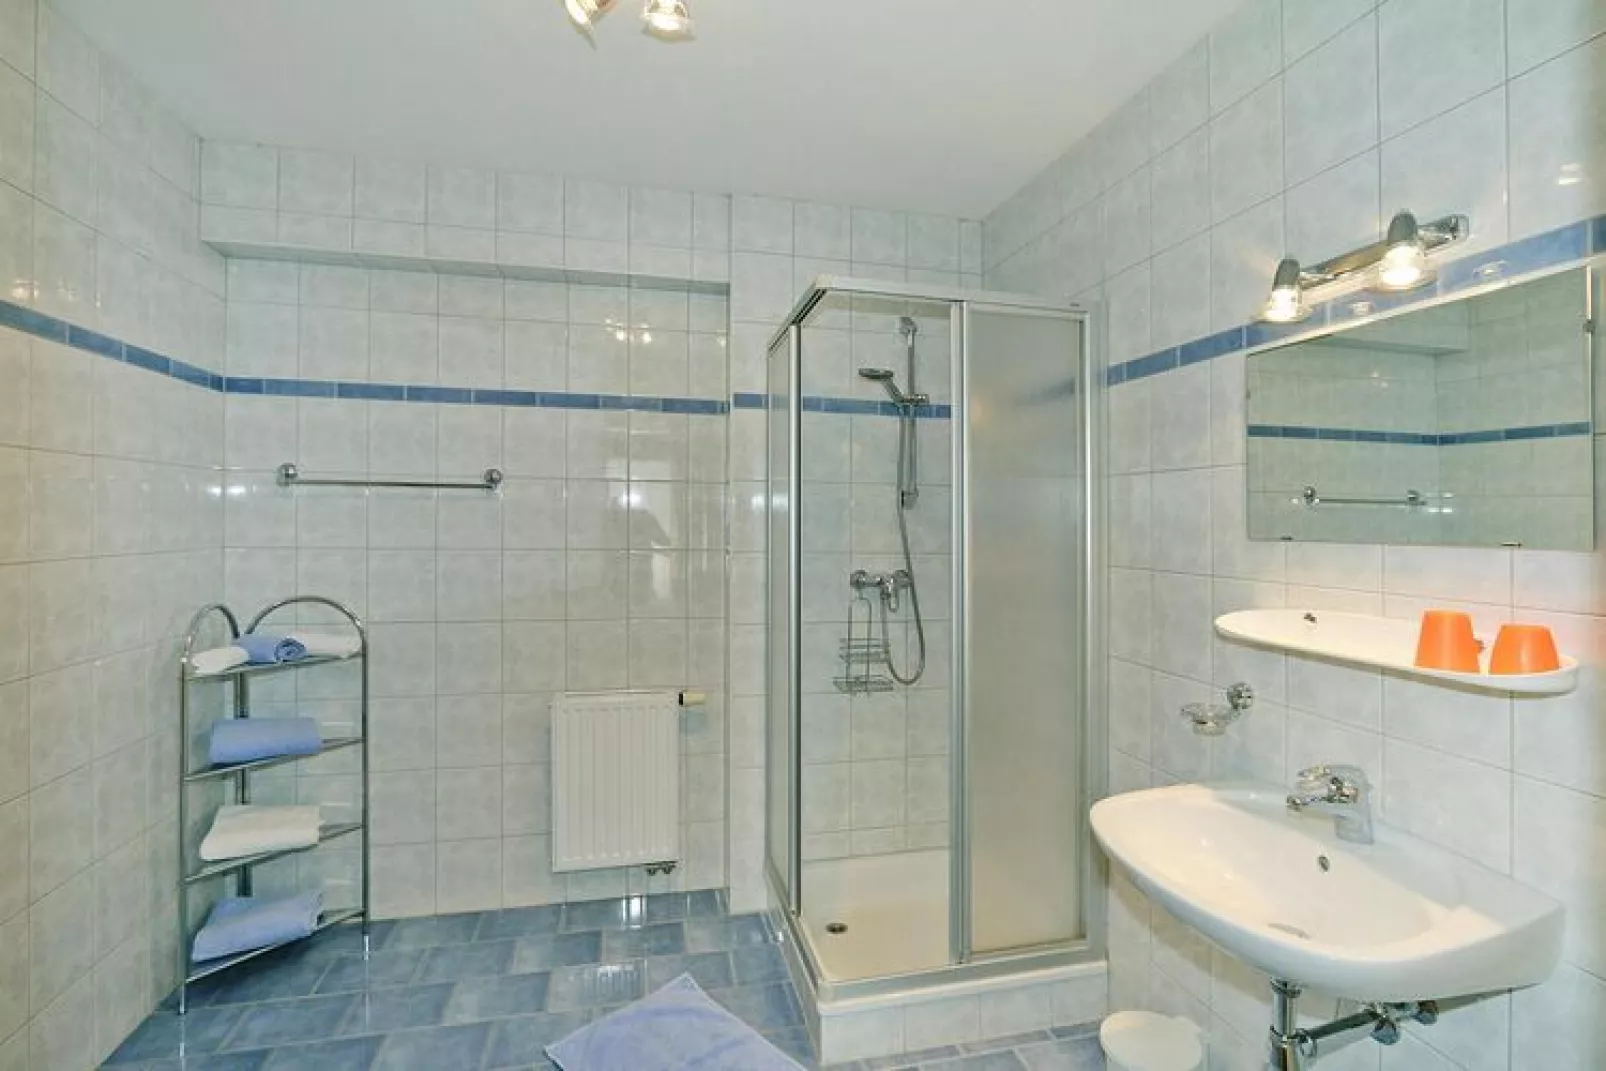 Wirtlerhaus Bichlbach - 4 Personen-Badkamer